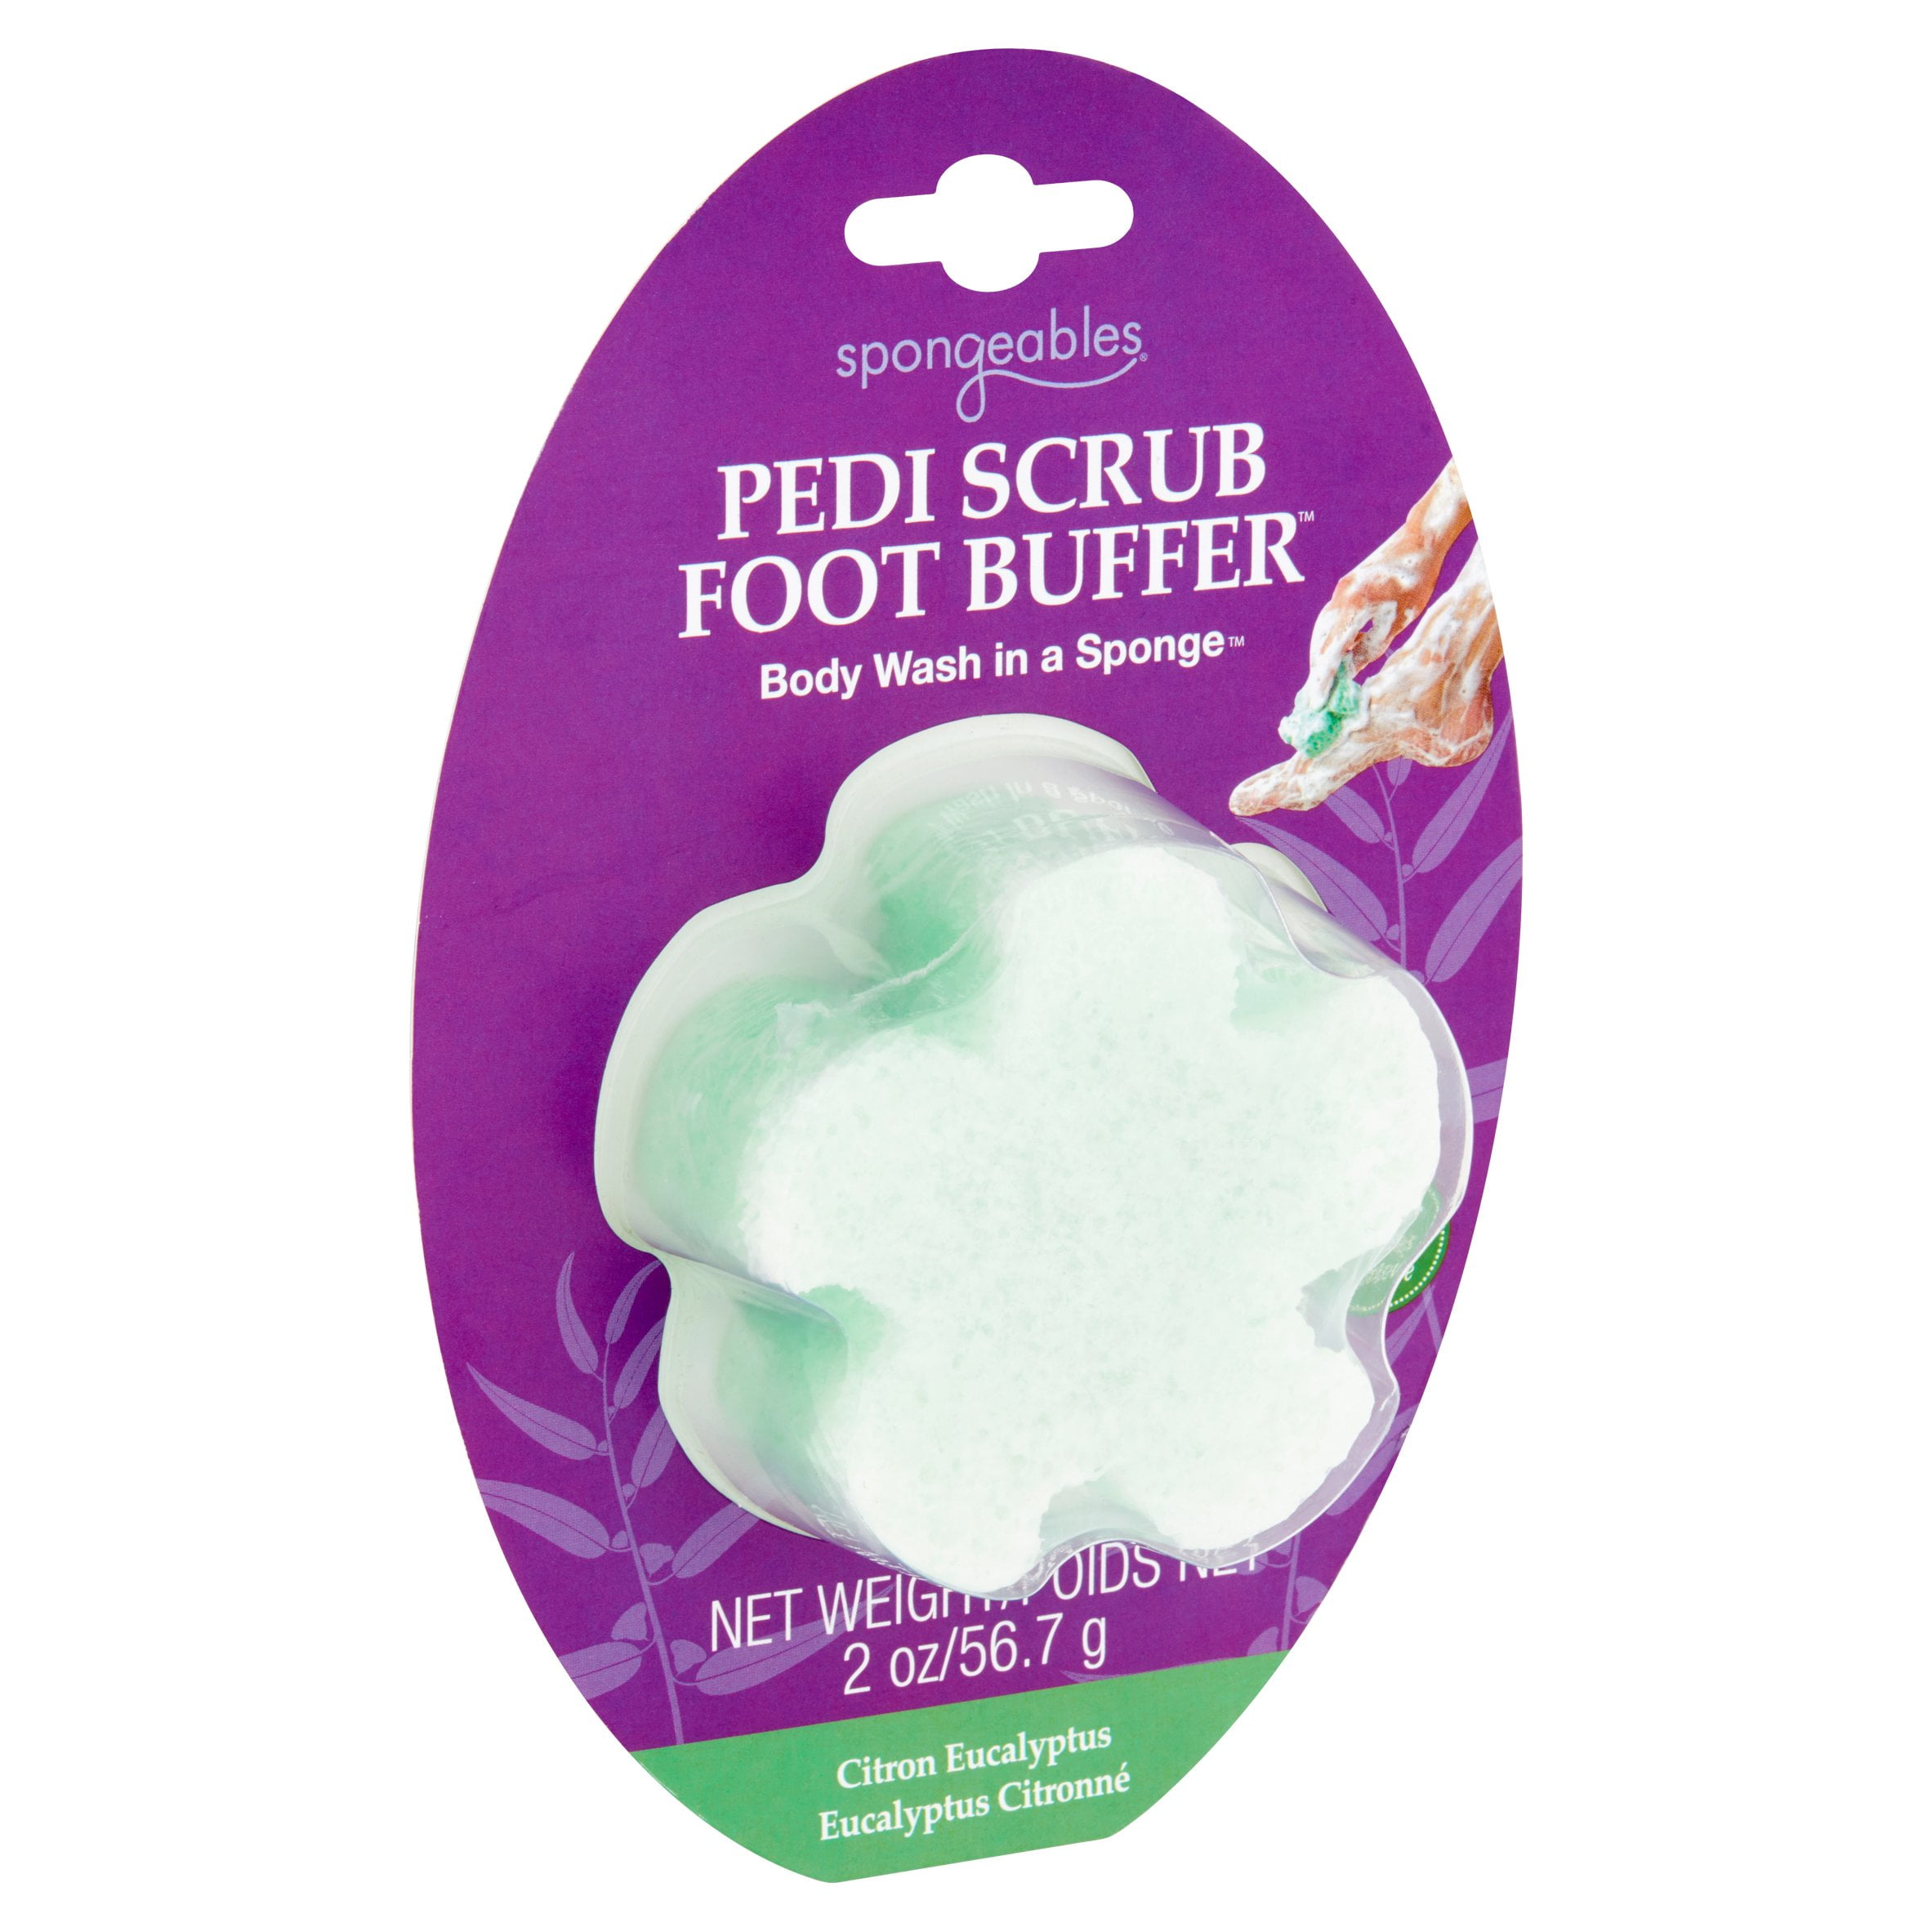 Pedi-Scrub In A Sponge Foot Buffer 20+ - Spongeables